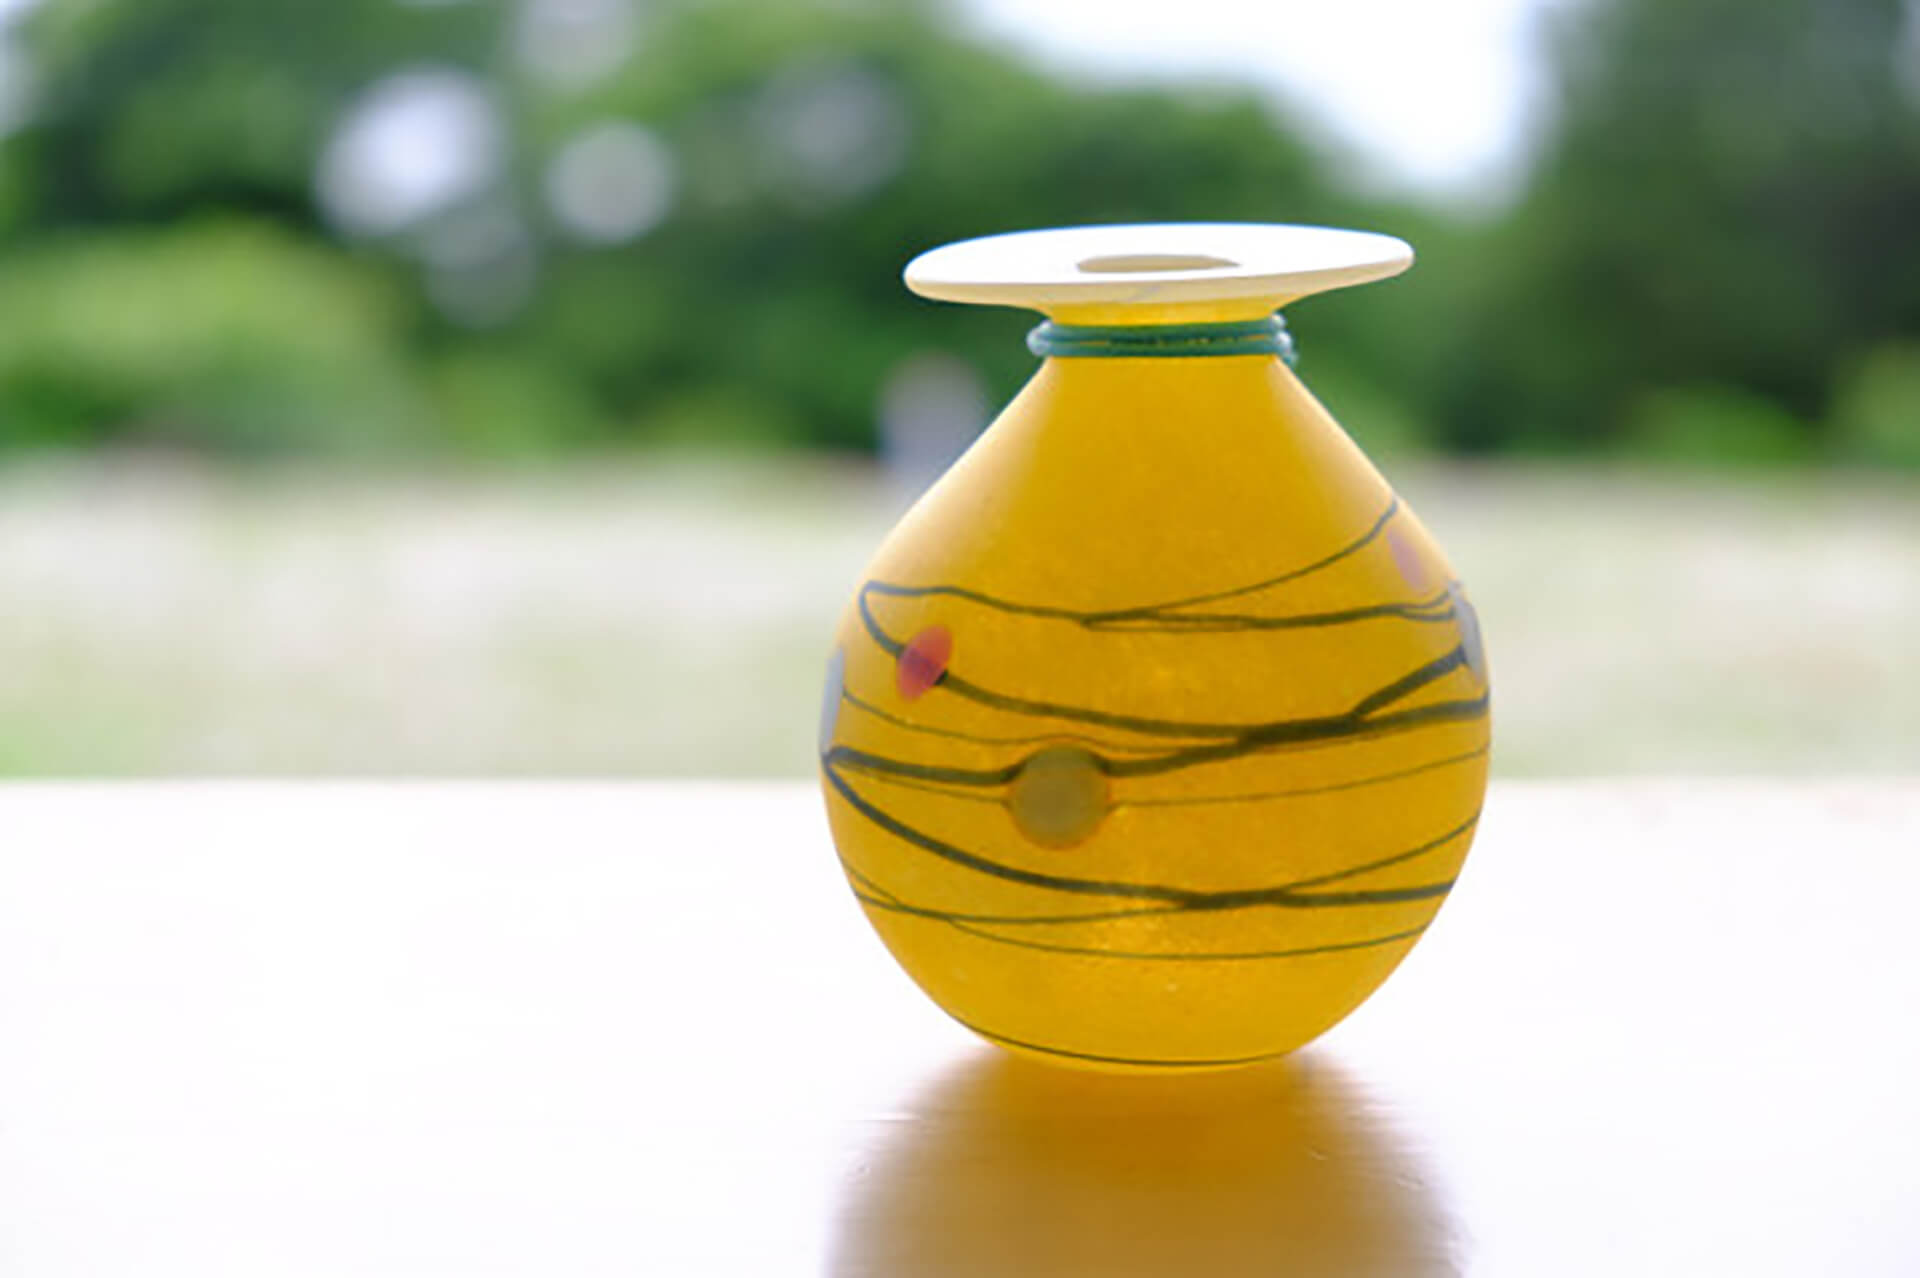 この写真は暮らしとクリーマに出品する、ワタリグラススタジオの商品ガラス花瓶です